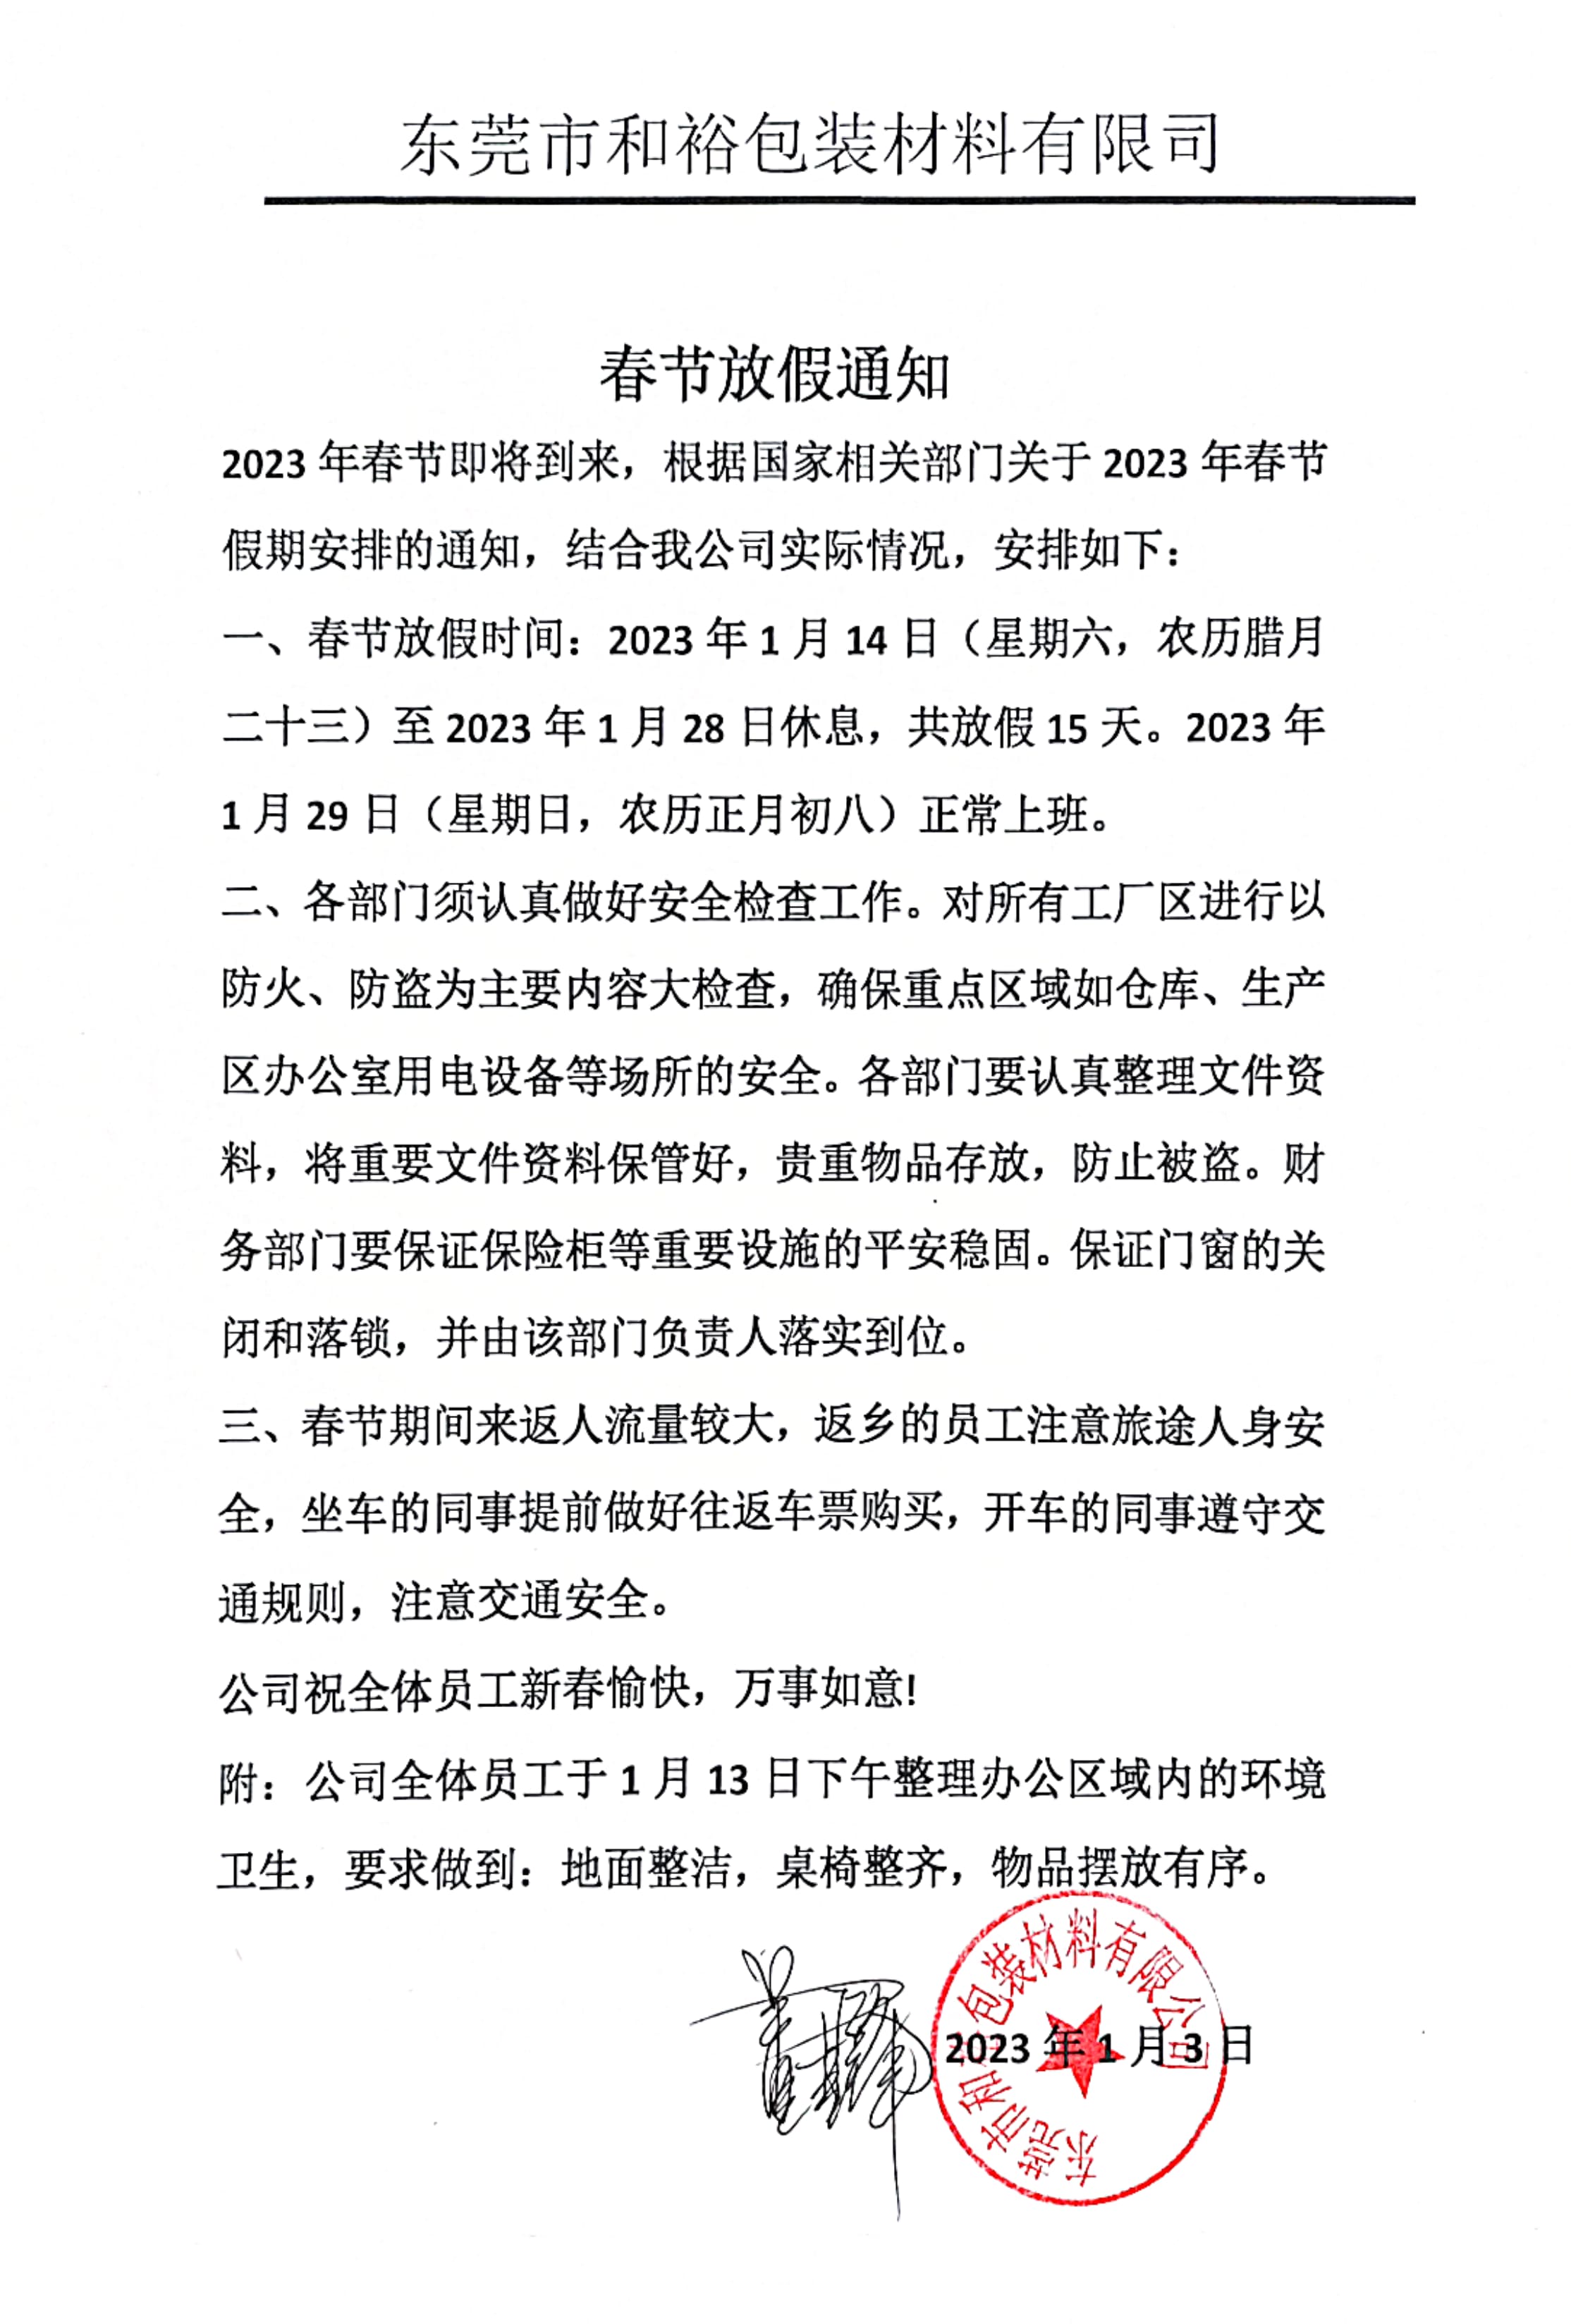 武清区2023年和裕包装春节放假通知